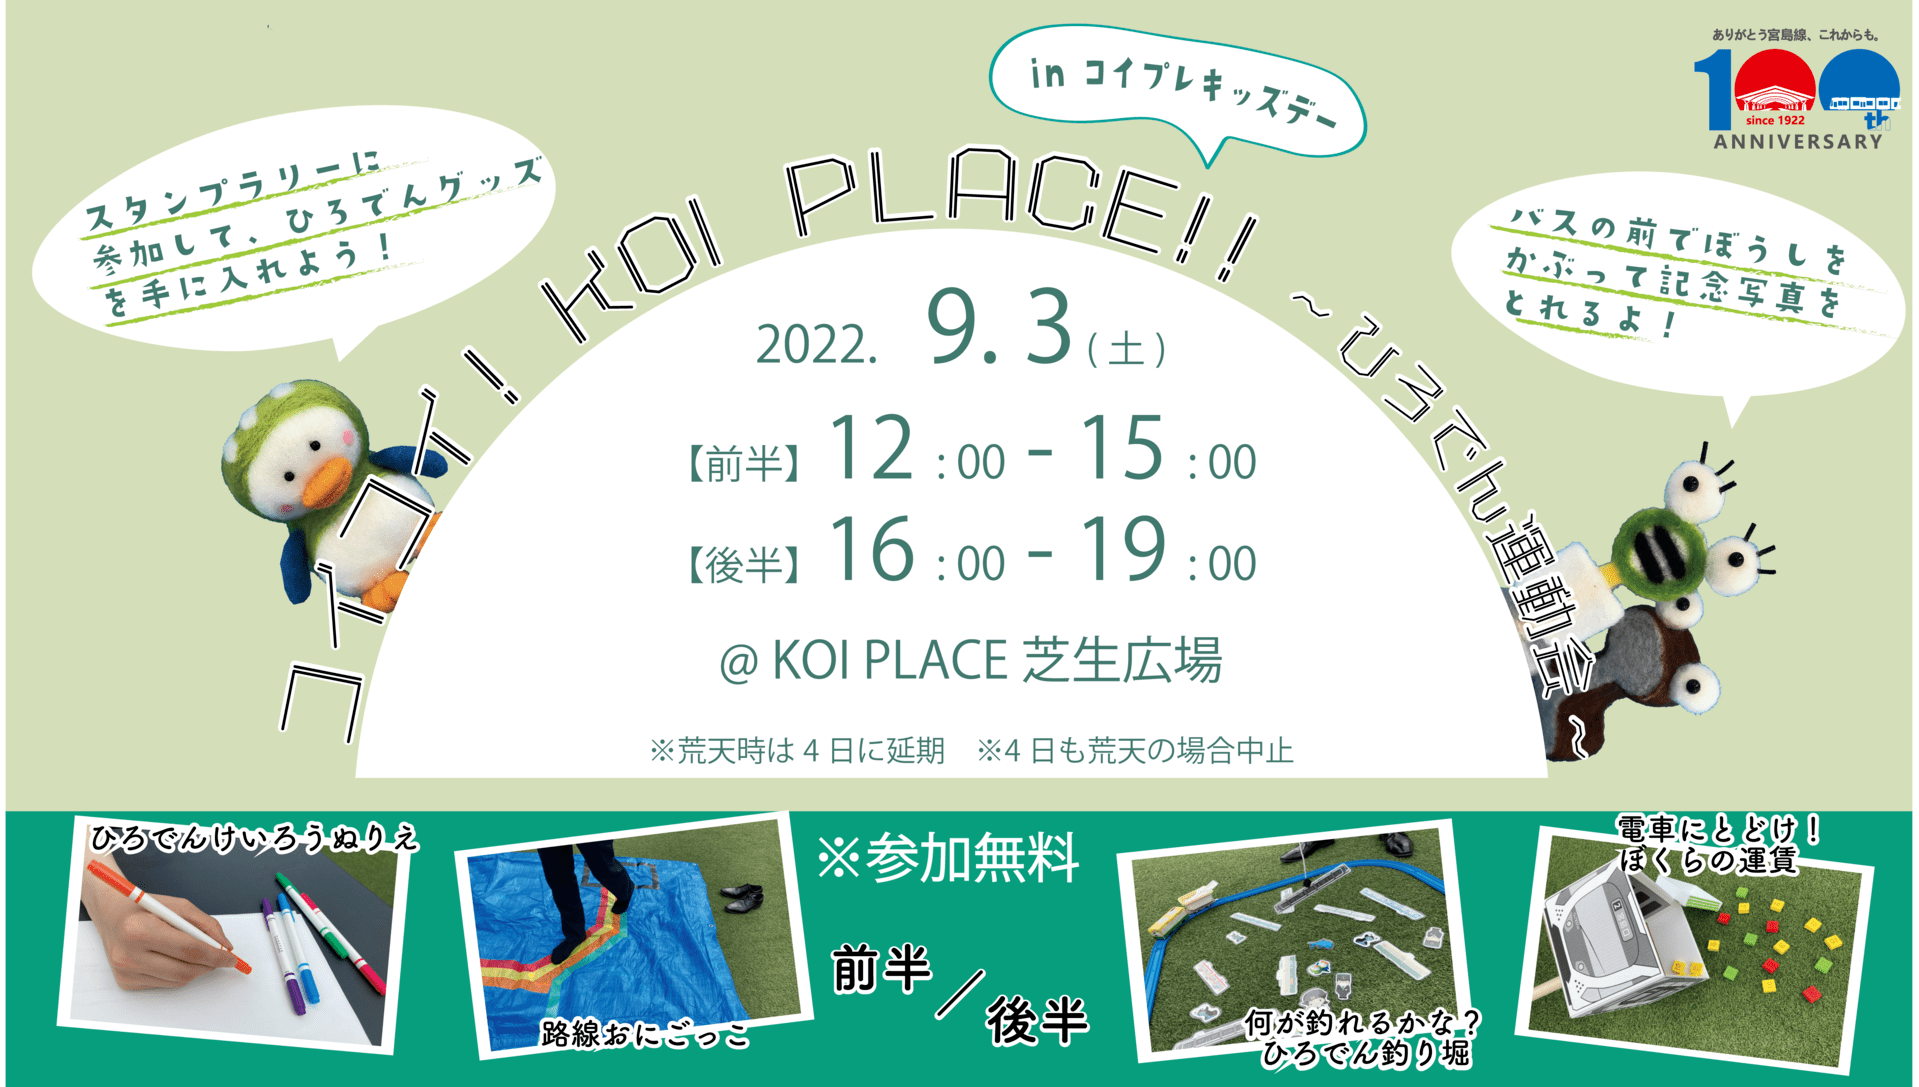 広島電鉄の新入社員が企画したイベント「コイコイ！KOI PLACE！！～広電運動会～」を開催します！